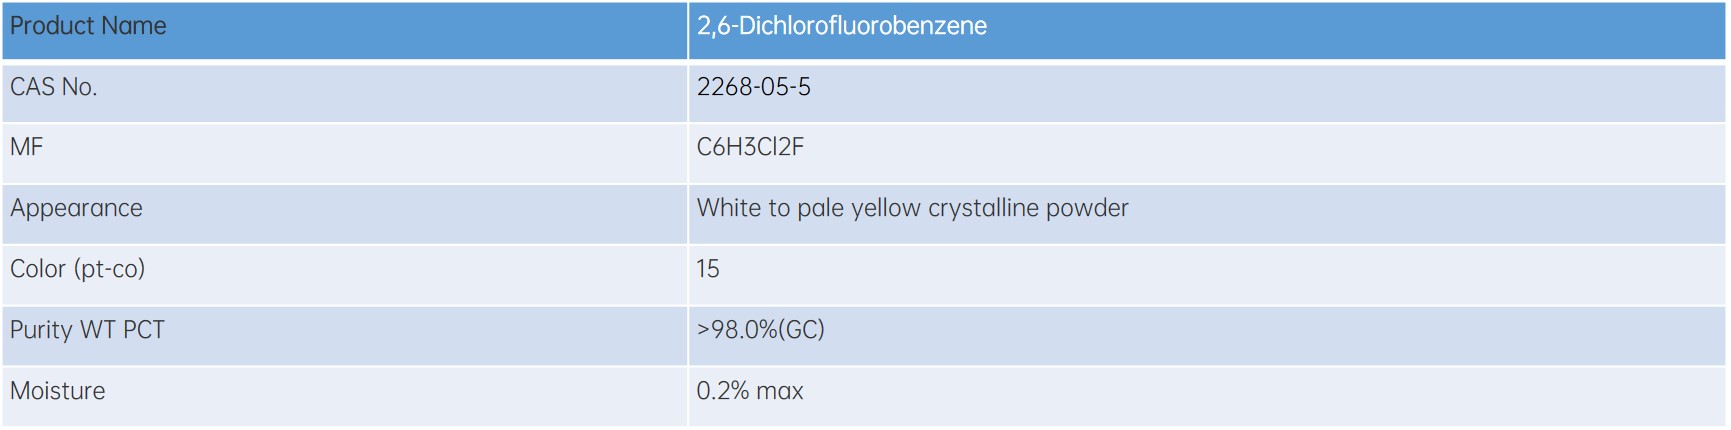 2,6-Dichlorofluorobenzene 